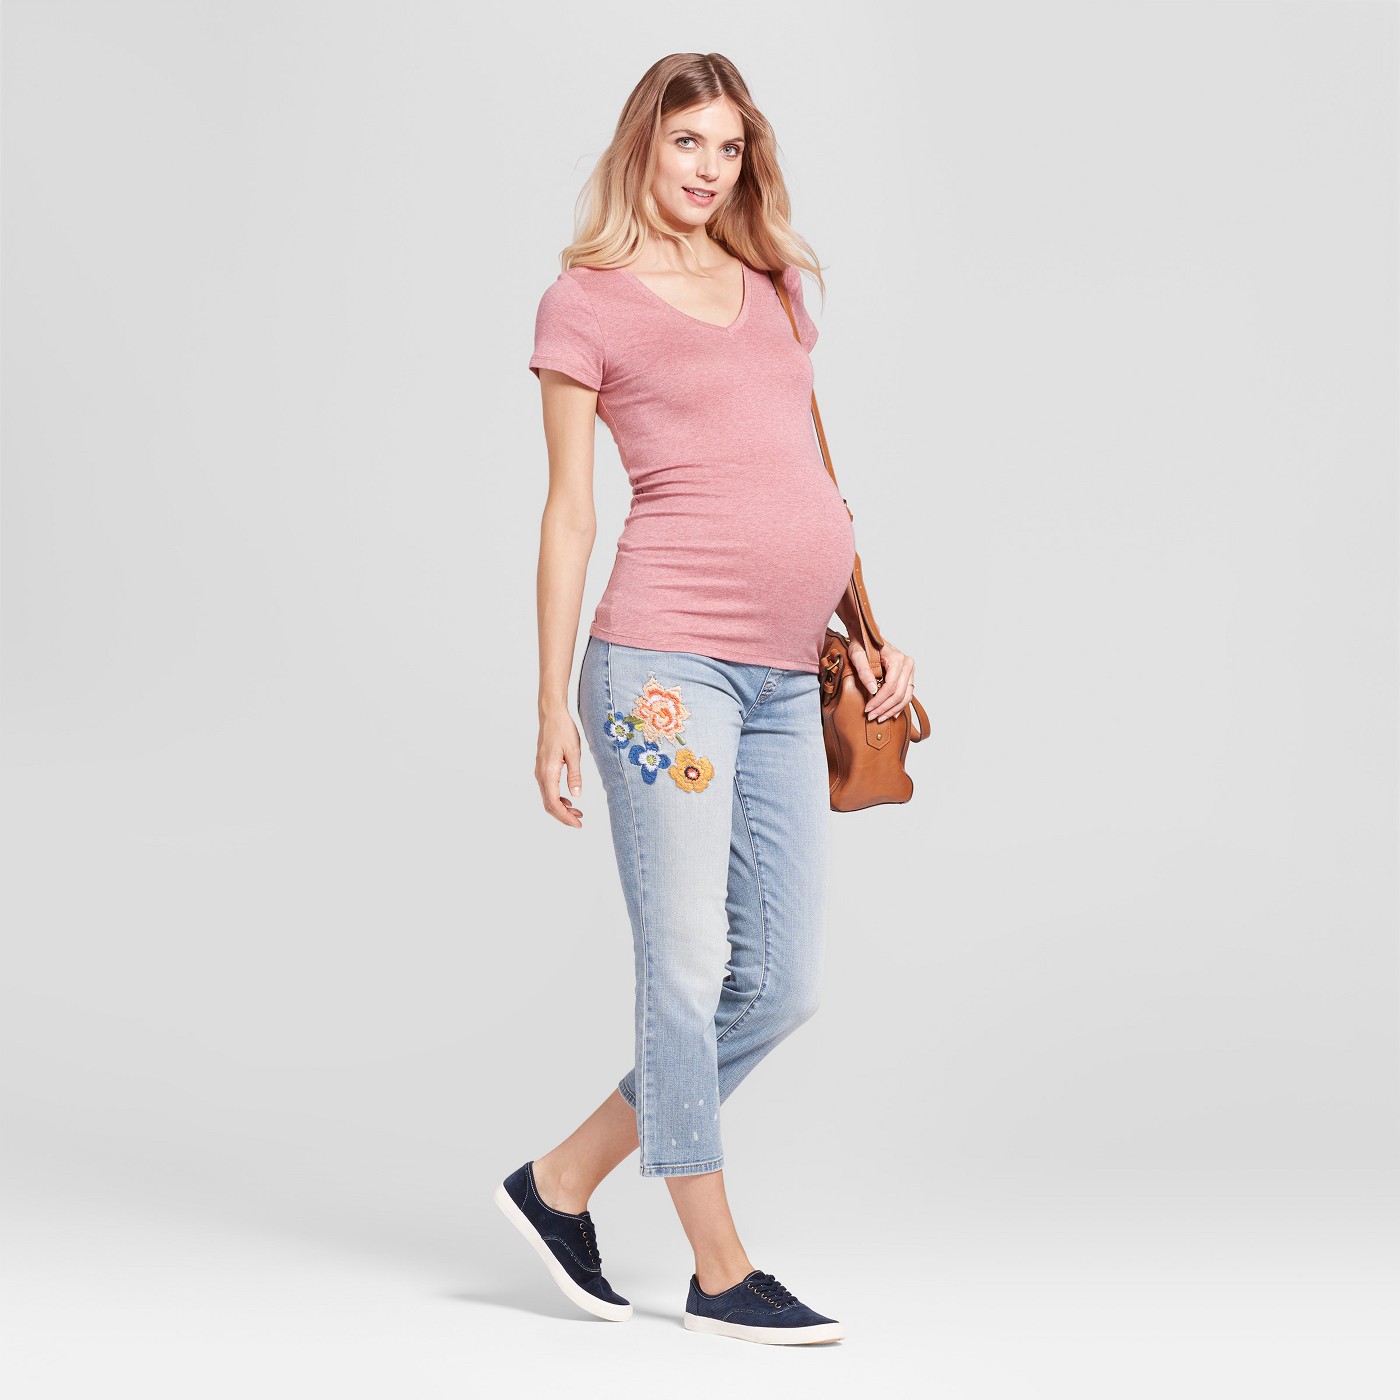 target maternity wear